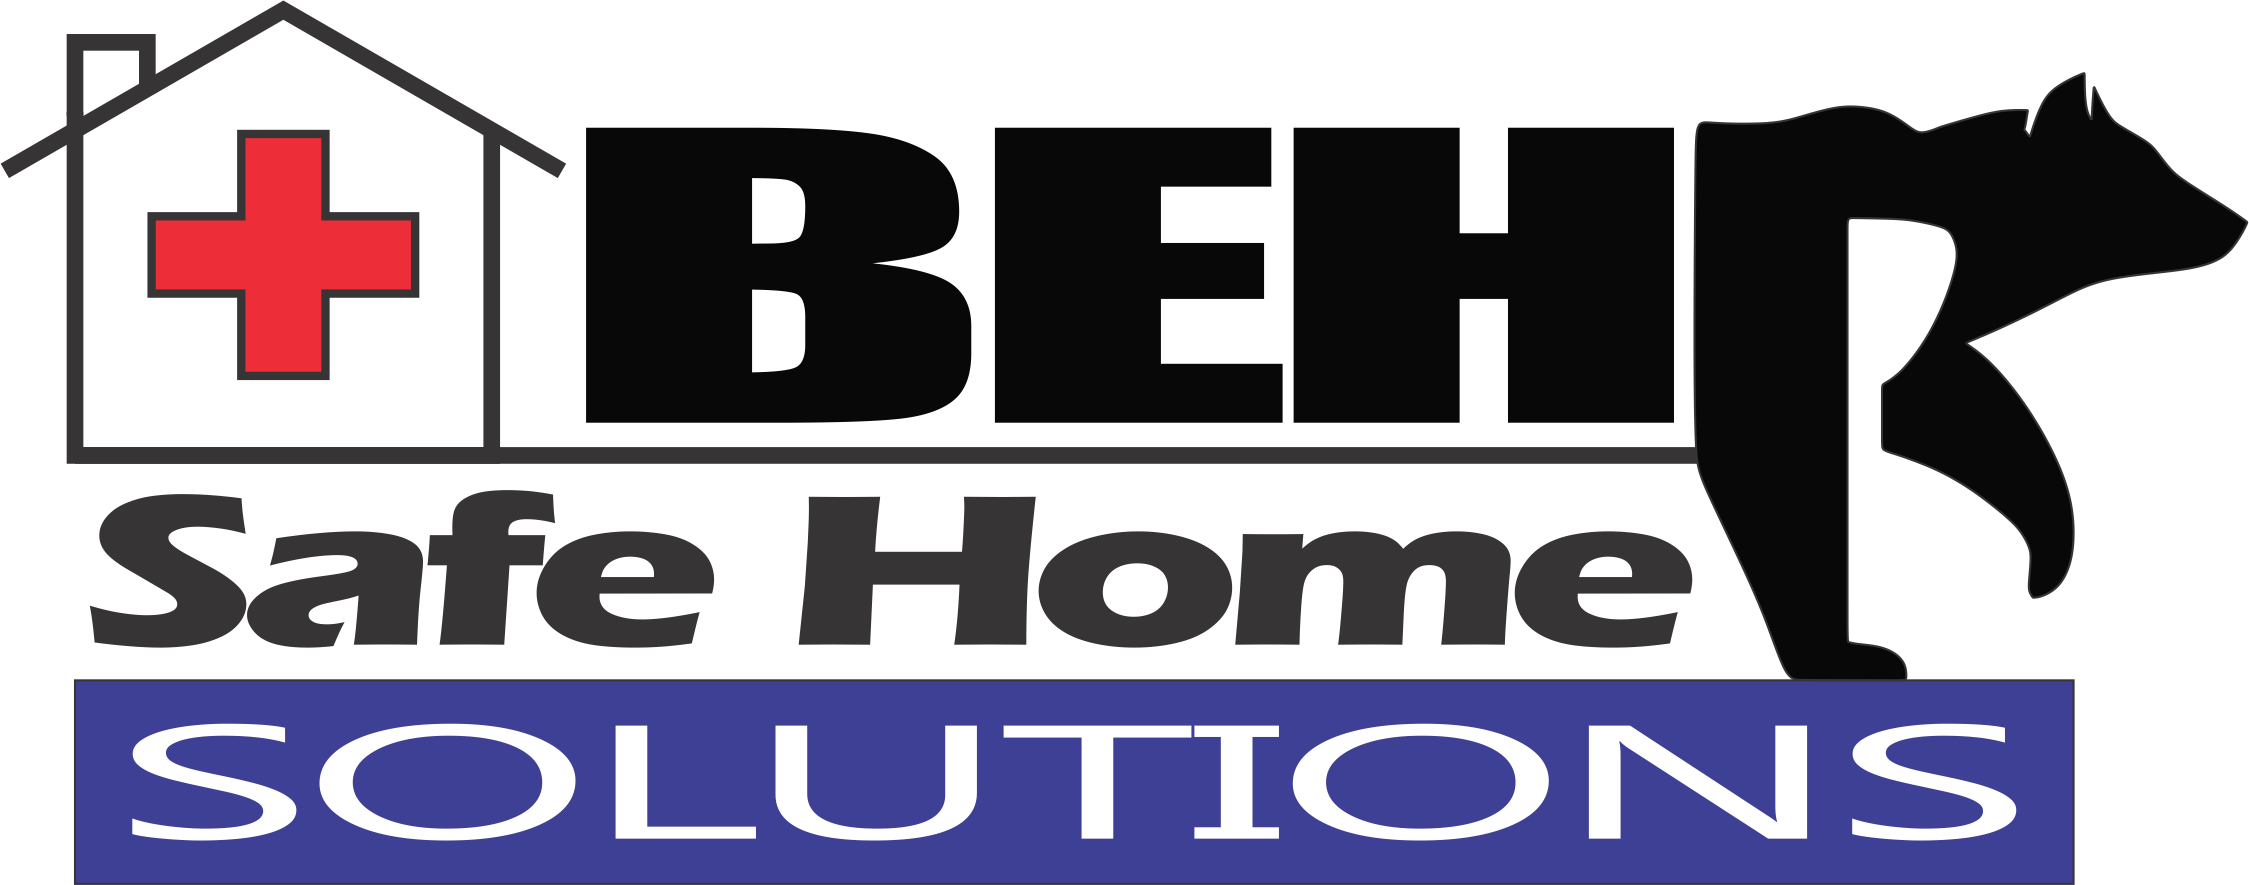 BEHRCO, Inc. Logo